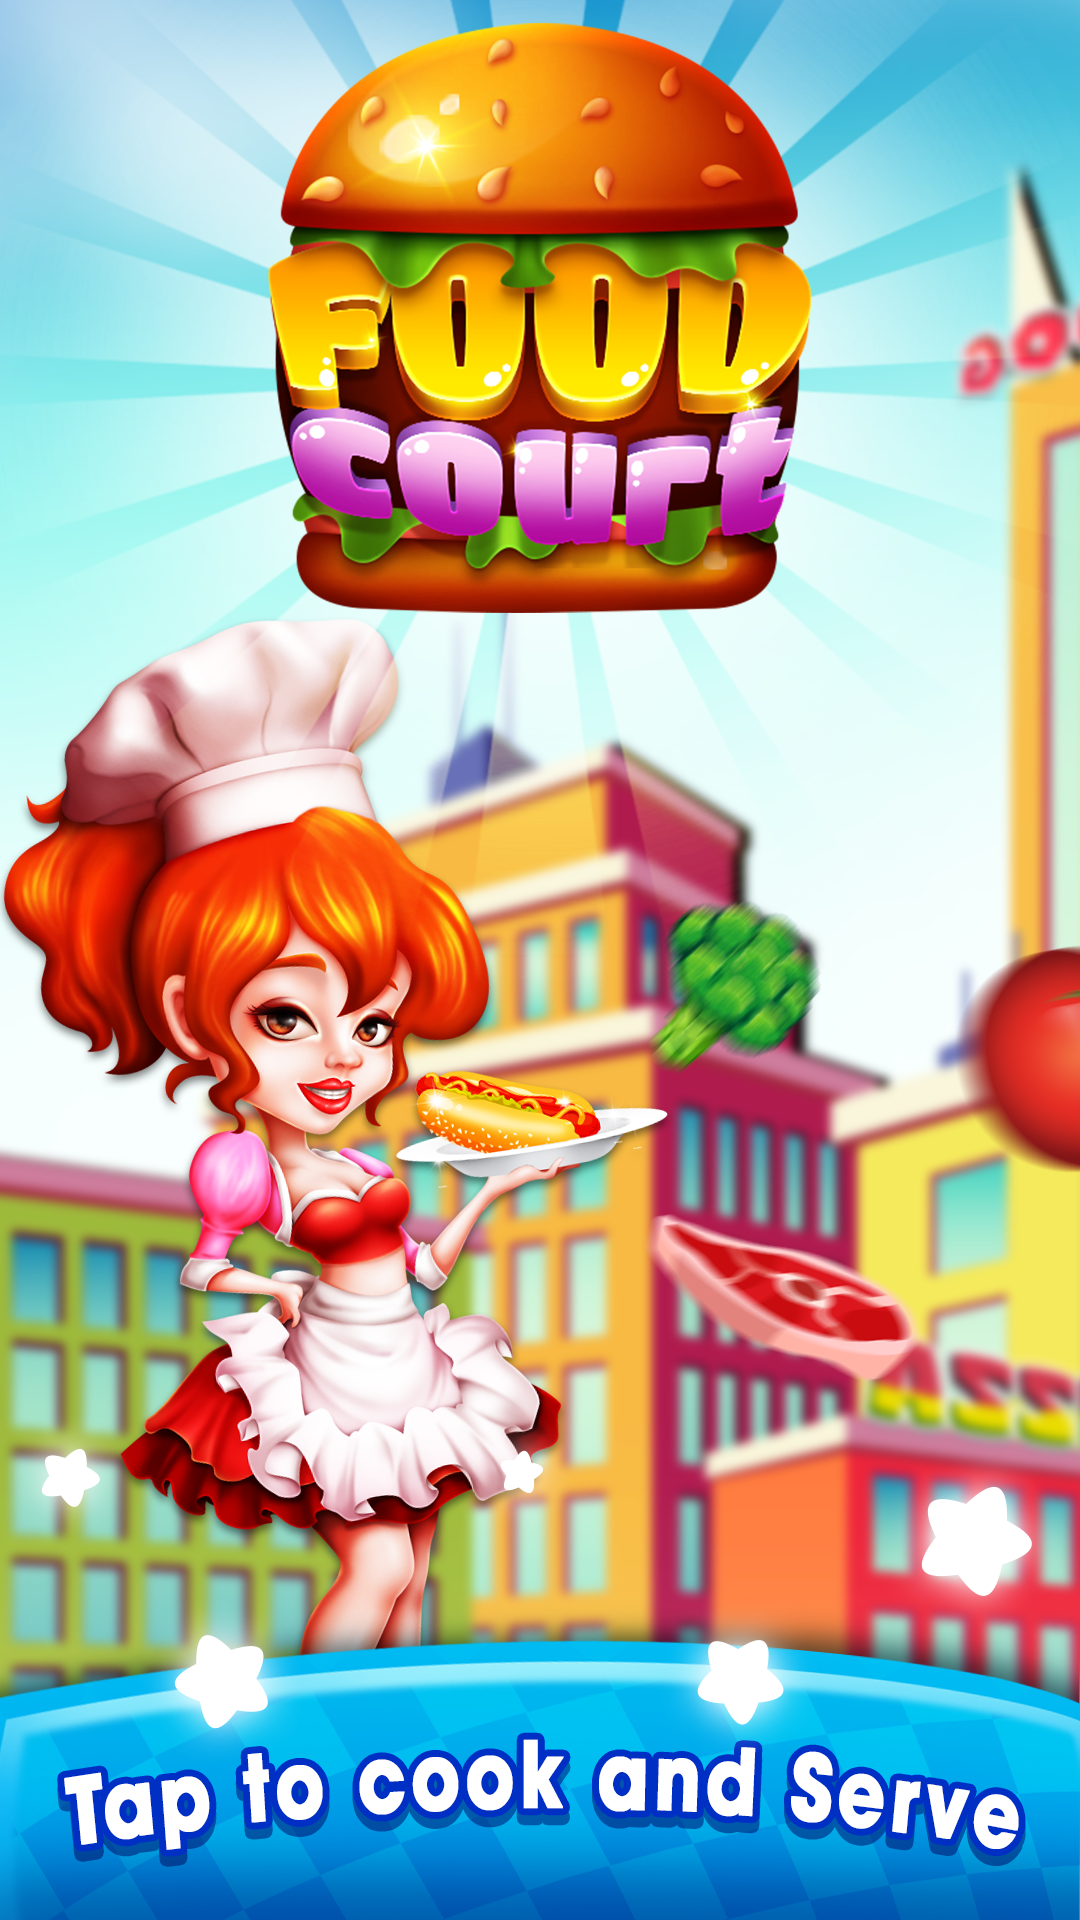 Screenshot 1 of Фуд-корт - Безумный шеф-повар Ресторан Кулинарные игры 1.0.6